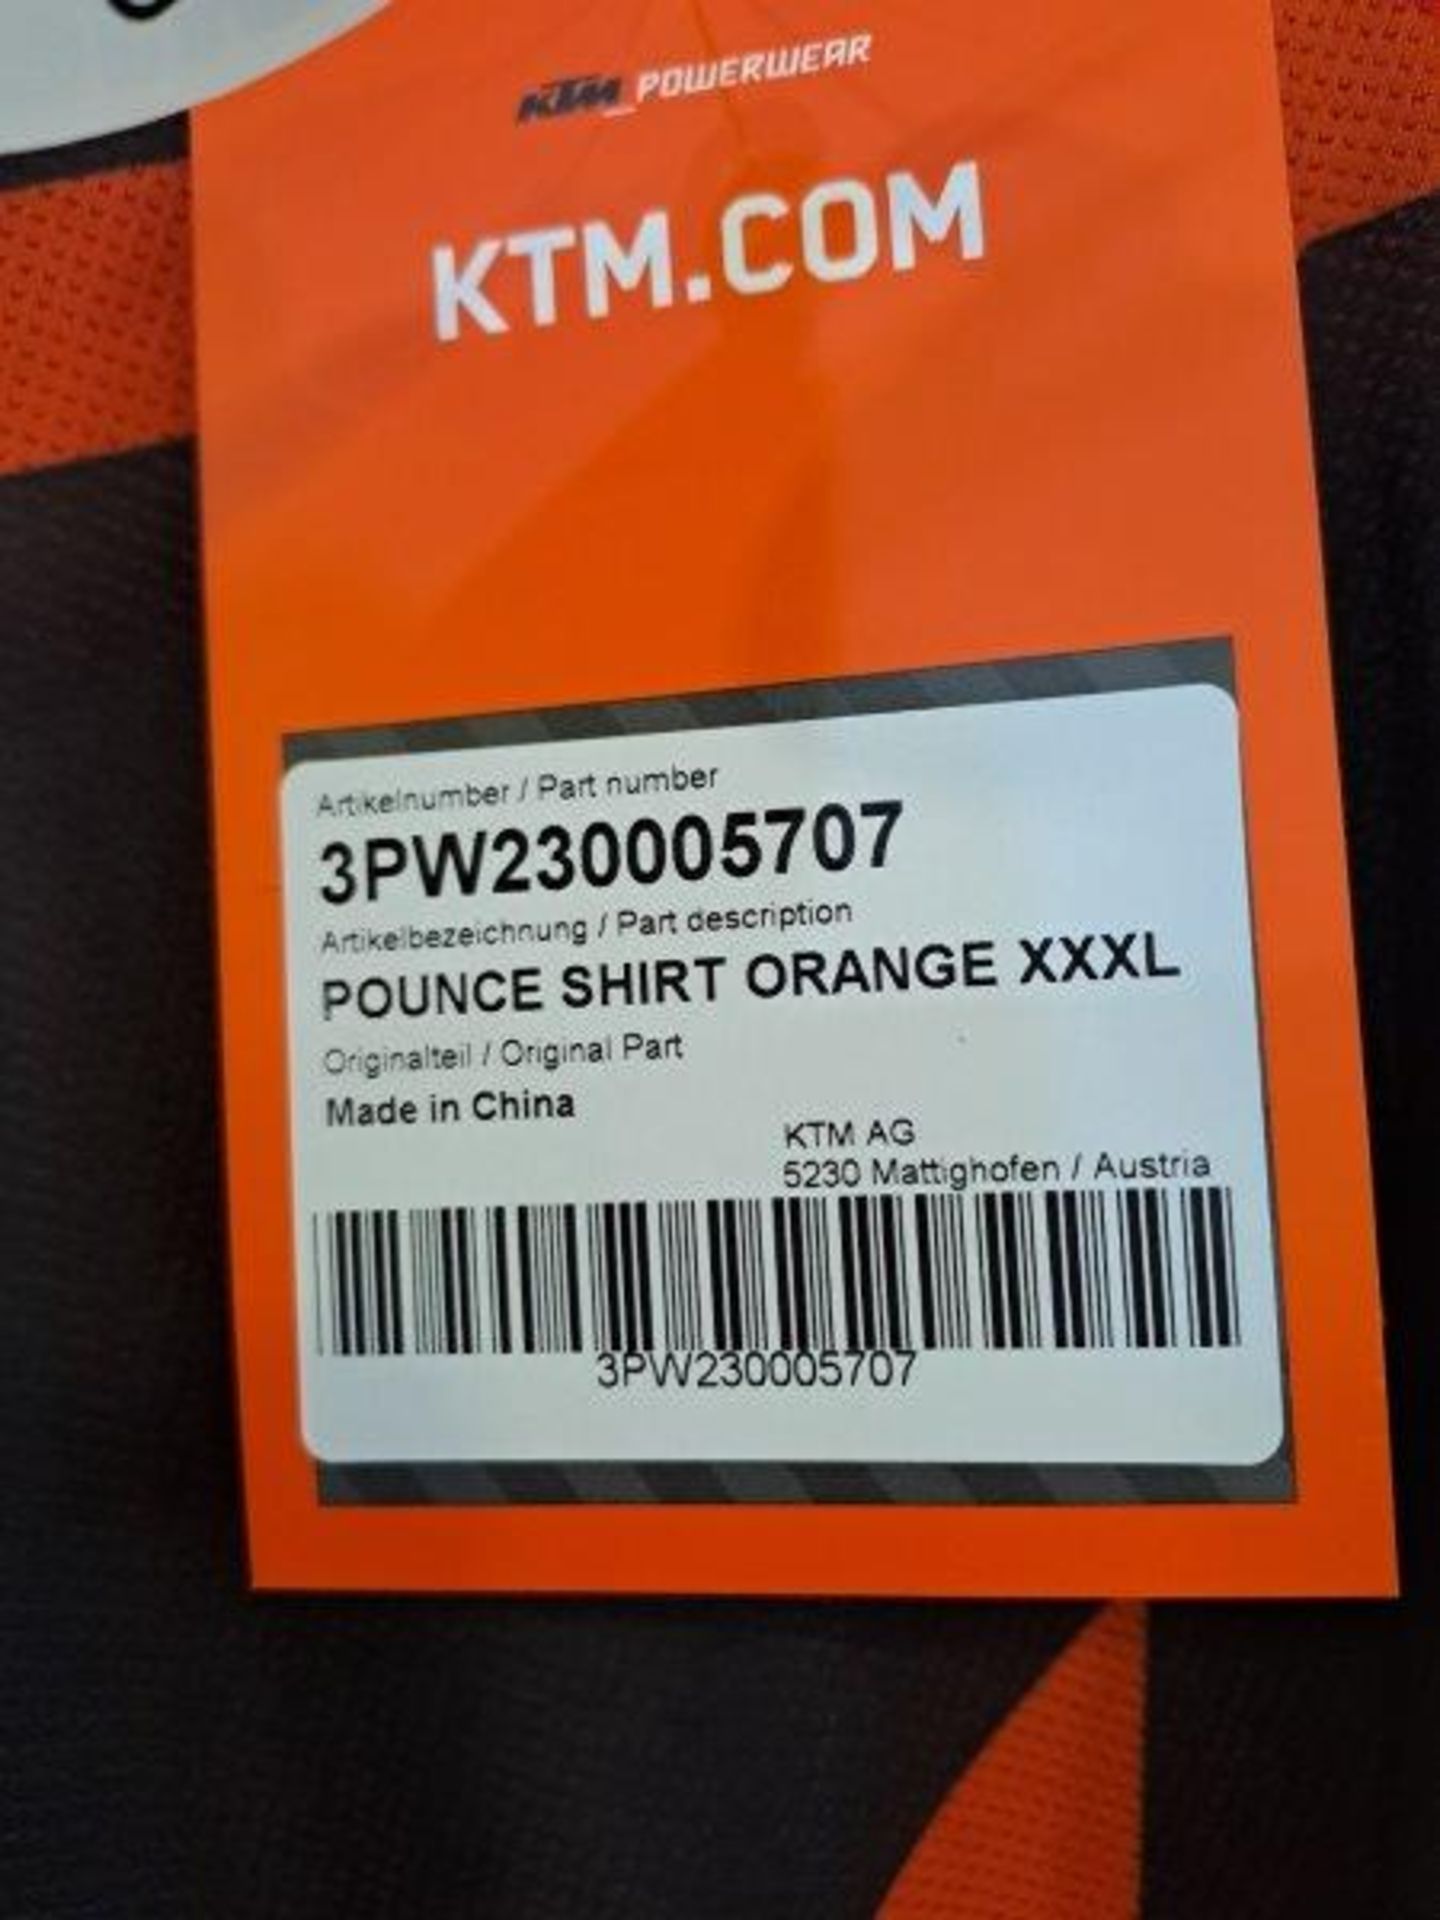 2 x KTM Shirts, Size XXX-Large - Image 3 of 6